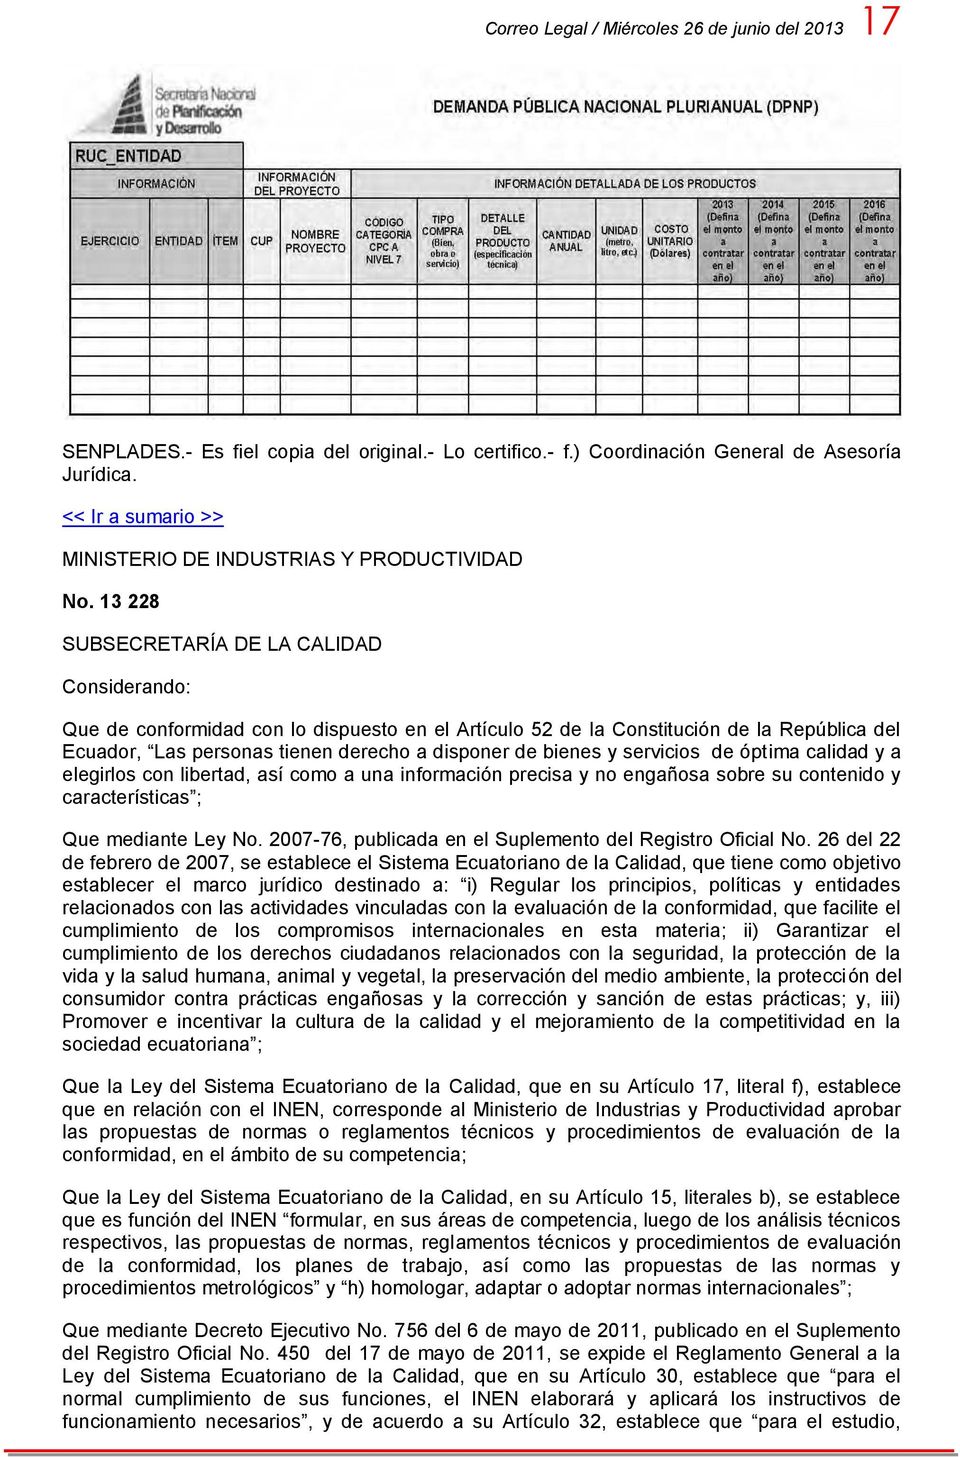 13 228 SUBSECRETARÍA DE LA CALIDAD Considerando: Que de conformidad con lo dispuesto en el Artículo 52 de la Constitución de la República del Ecuador, Las personas tienen derecho a disponer de bienes